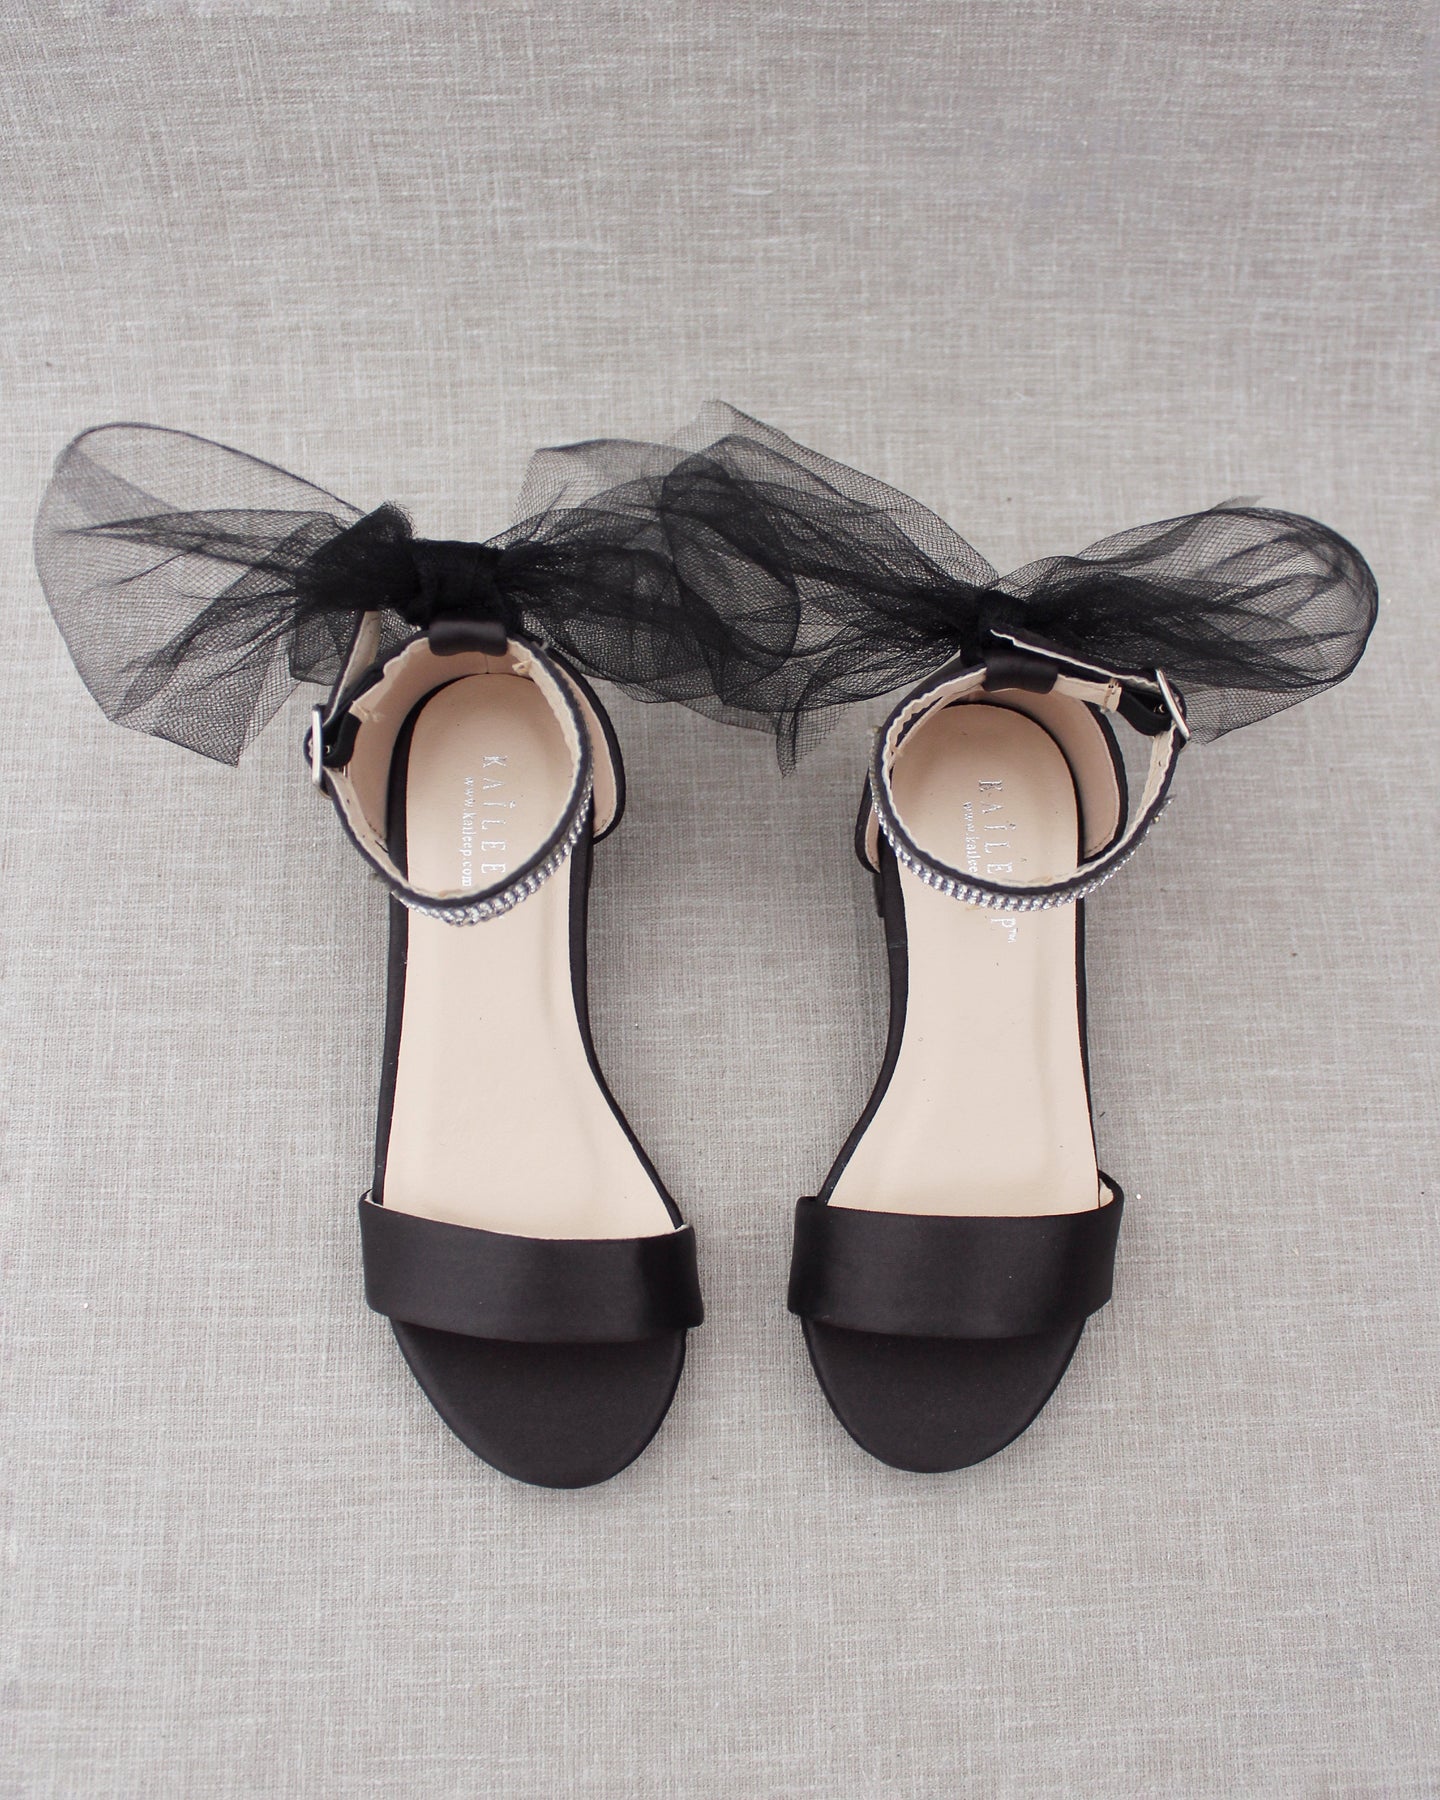 Efashion Paris Lottie Embellished Bow Court Heels in Black | iCLOTHING -  iCLOTHING